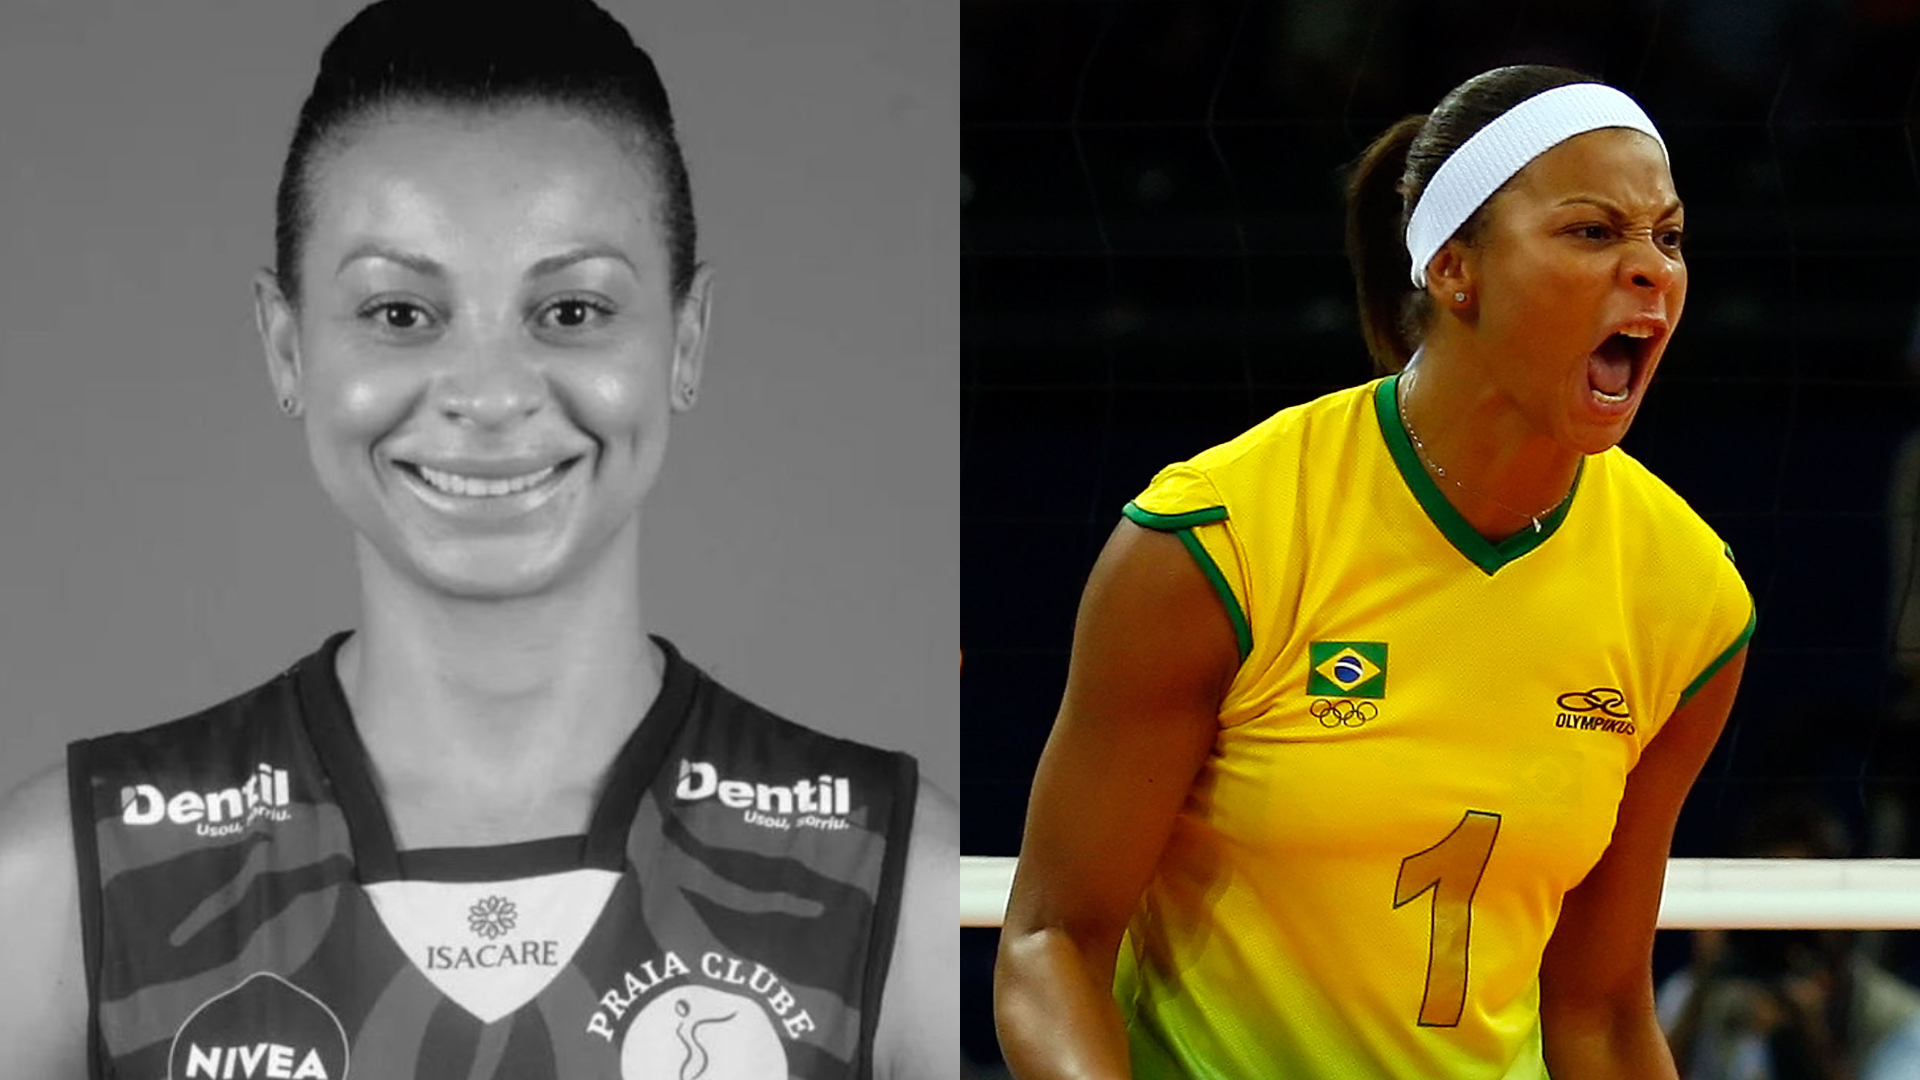 Walewska Oliveira: Mãe da atleta detalha último encontro: ‘Minha filha estava alegre’